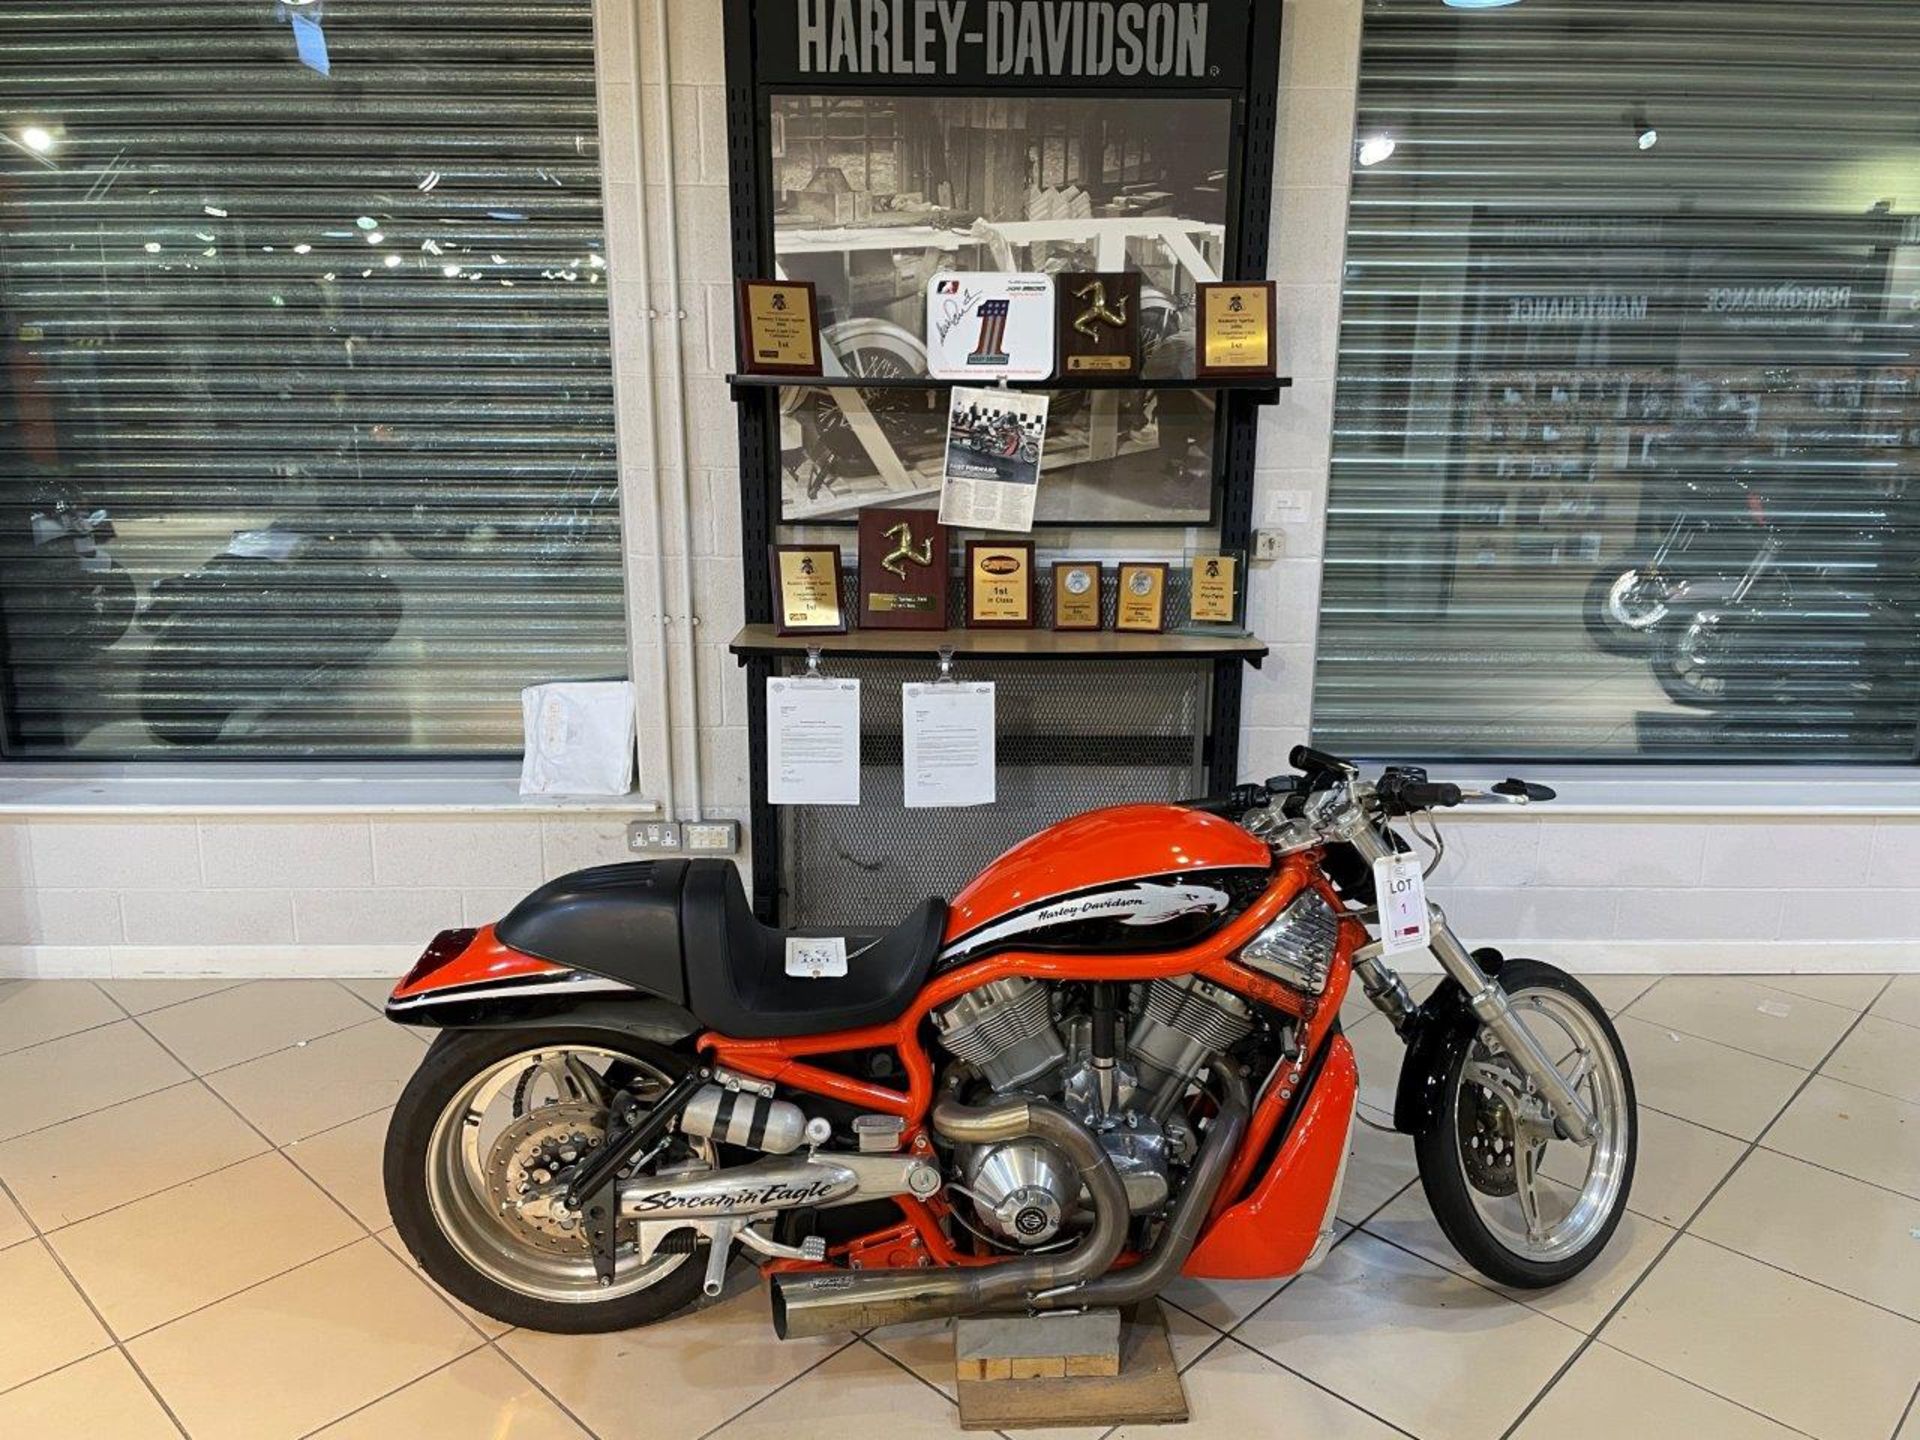 Harley Davidson V-Rod Destroyer Drag Race Bike (2006) - Image 18 of 34